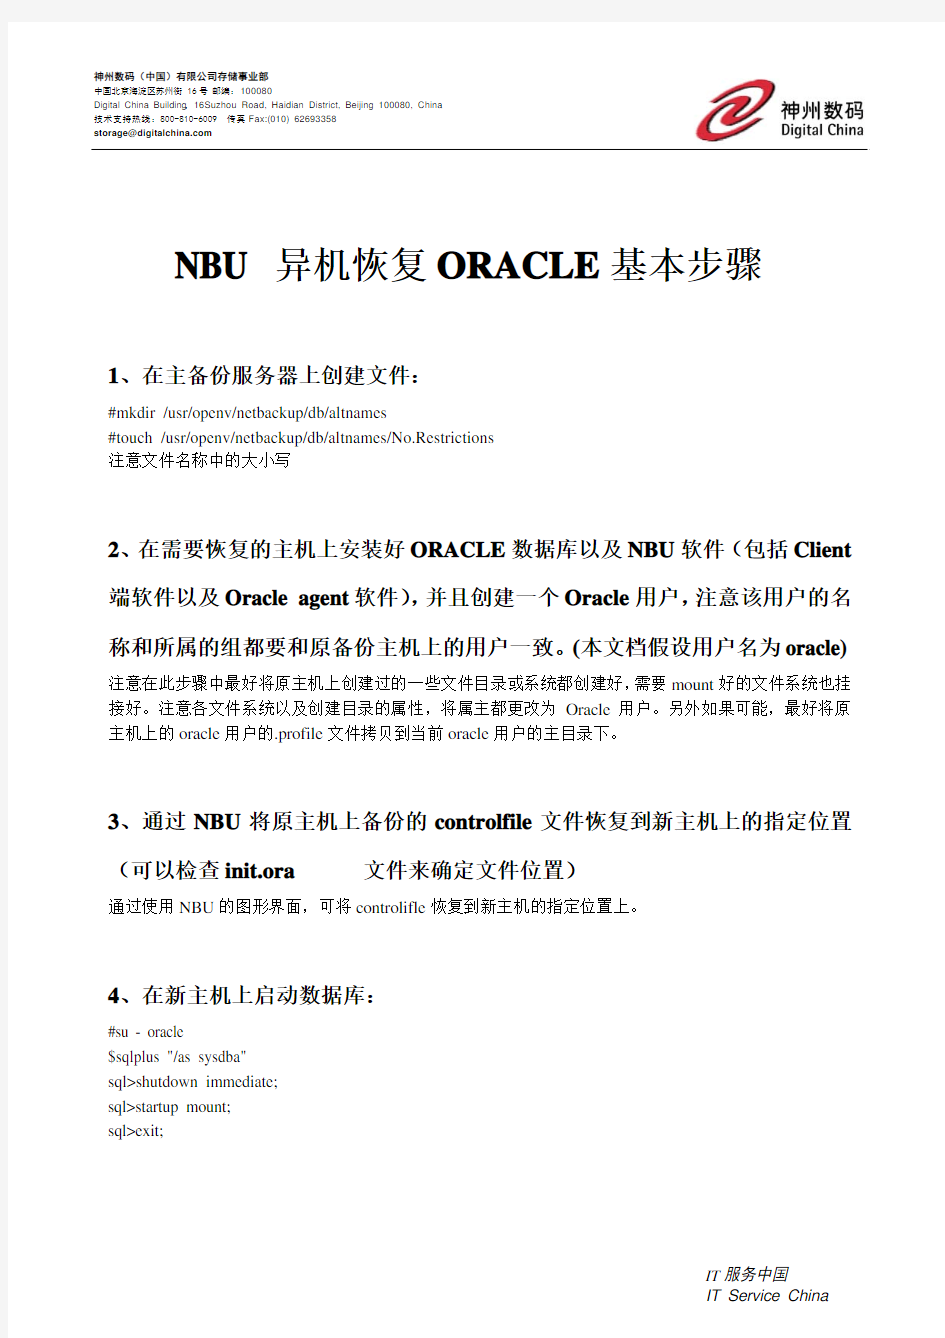 NBU 异机恢复ORACLE基本步骤